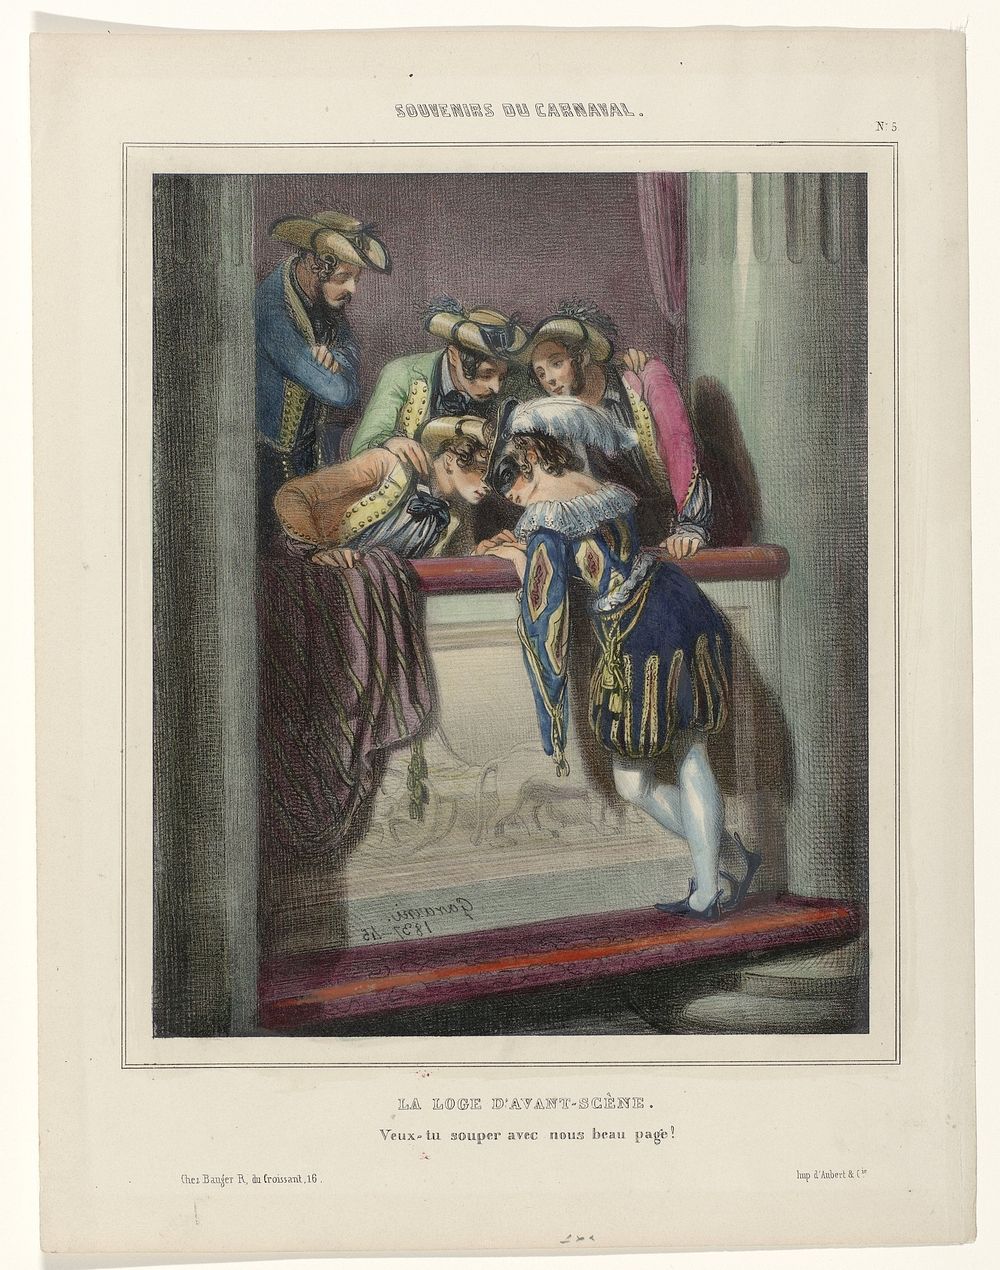 Souvenirs du Carnaval, 1837-45, No. 5 : La Loge d'avant-scèn (...) (1837 - 1845) by Paul Gavarni, Paul Gavarni, Bauger and…